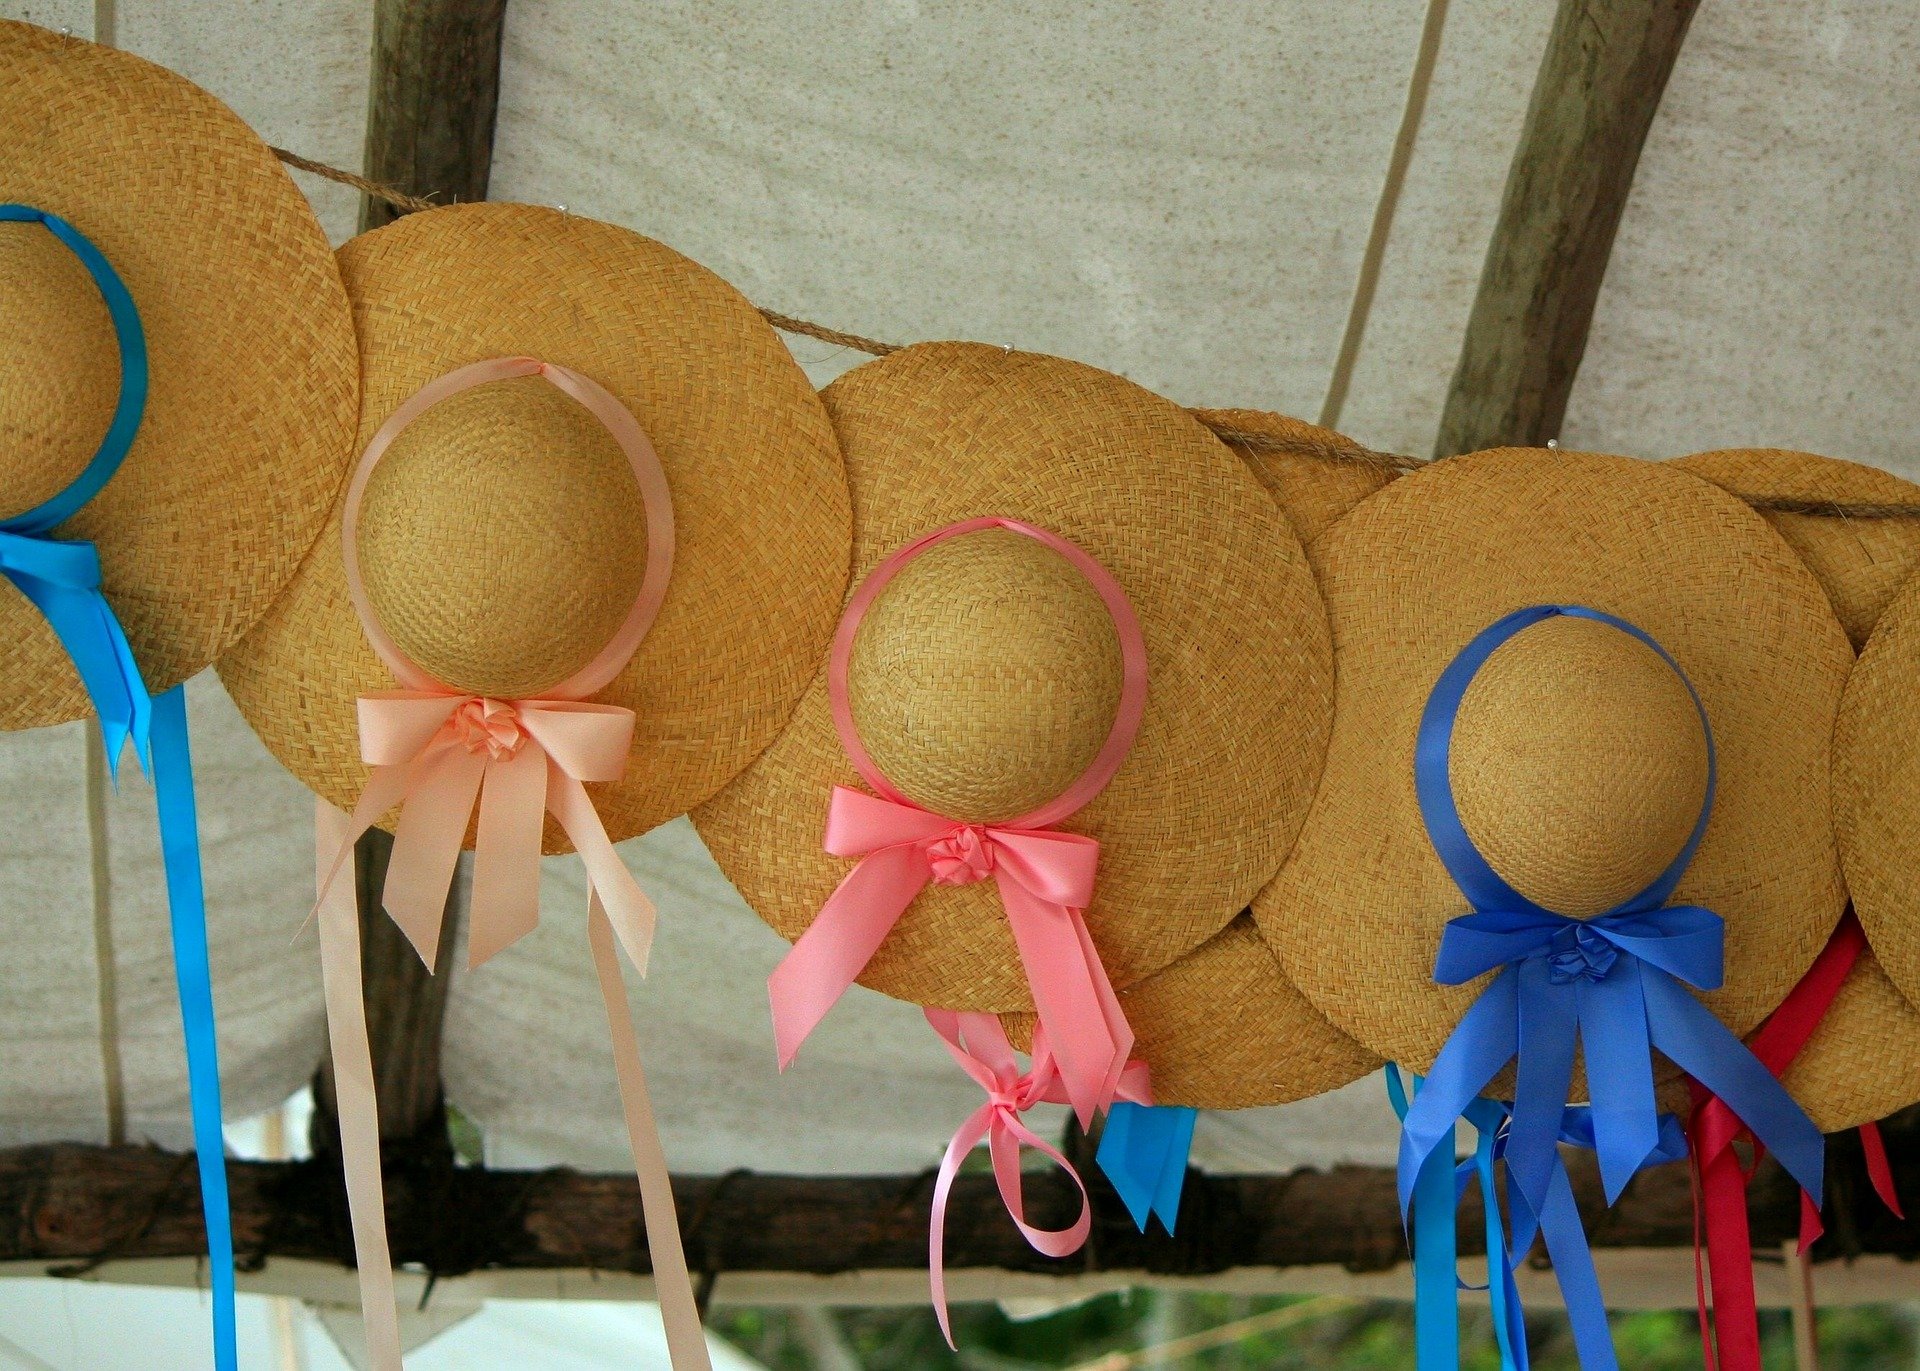 più cappelli femminili di paglia con fiocchi blu e rosa appesi